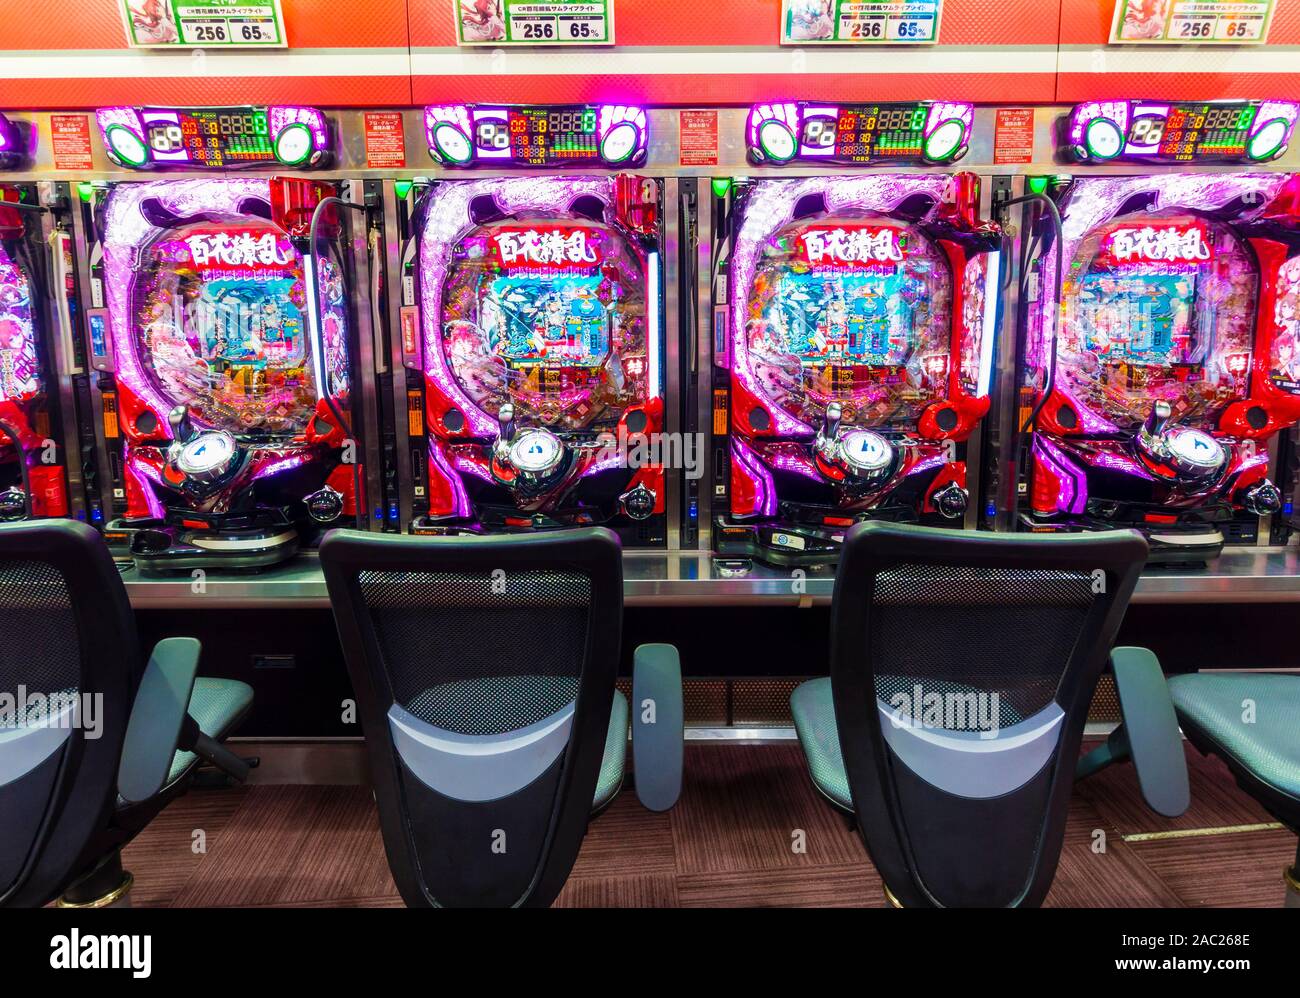 Tokyo, Japan - 12 Okt 2018: Eine Reihe von Pachinko Slot Maschinen innerhalb einer Pachinko Salon in Tokio, Japan. Stockfoto